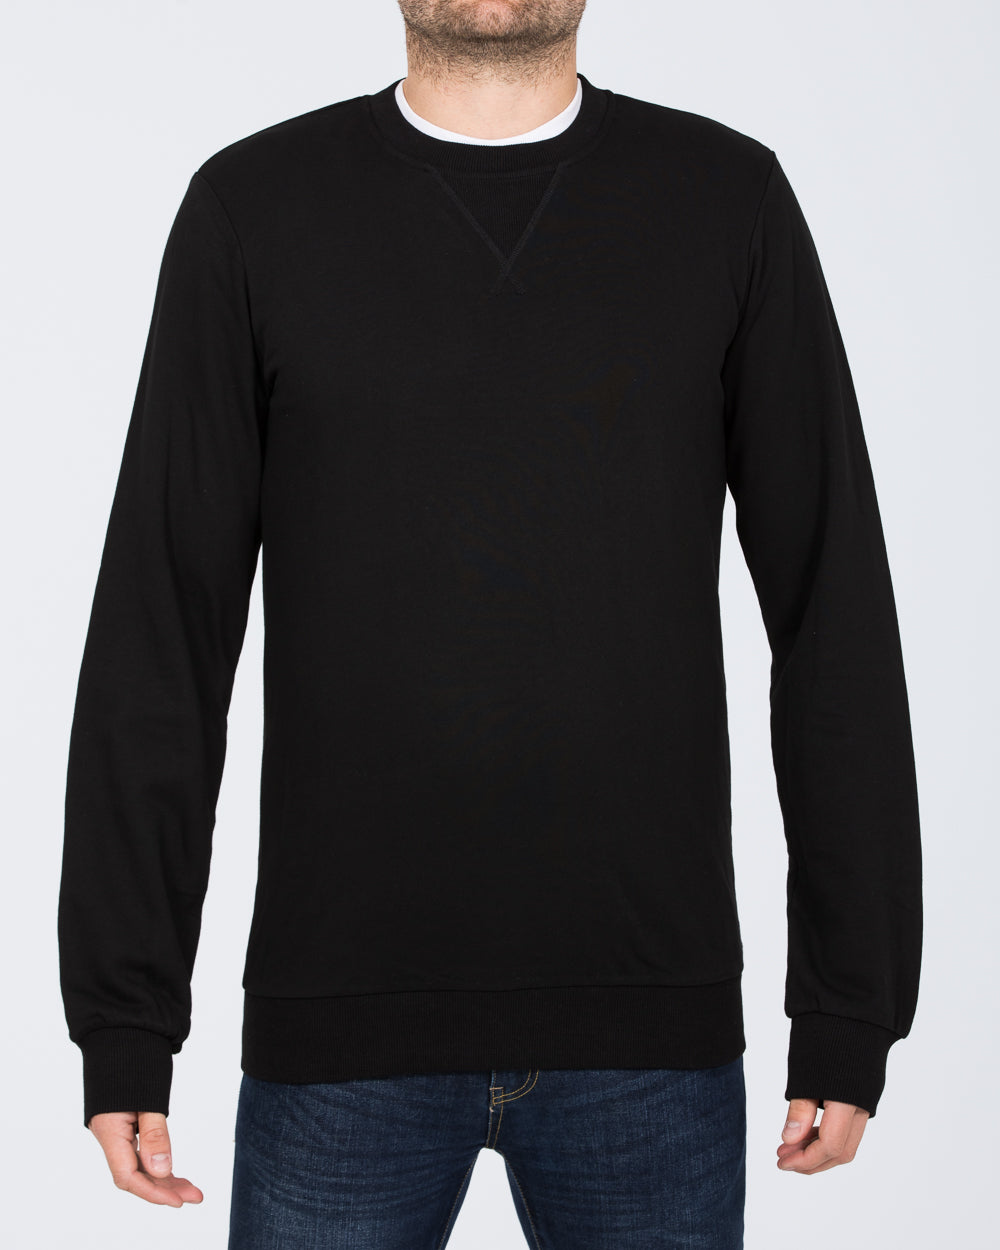 2t Alvin Slim Fit Tall Sweatshirt (black)